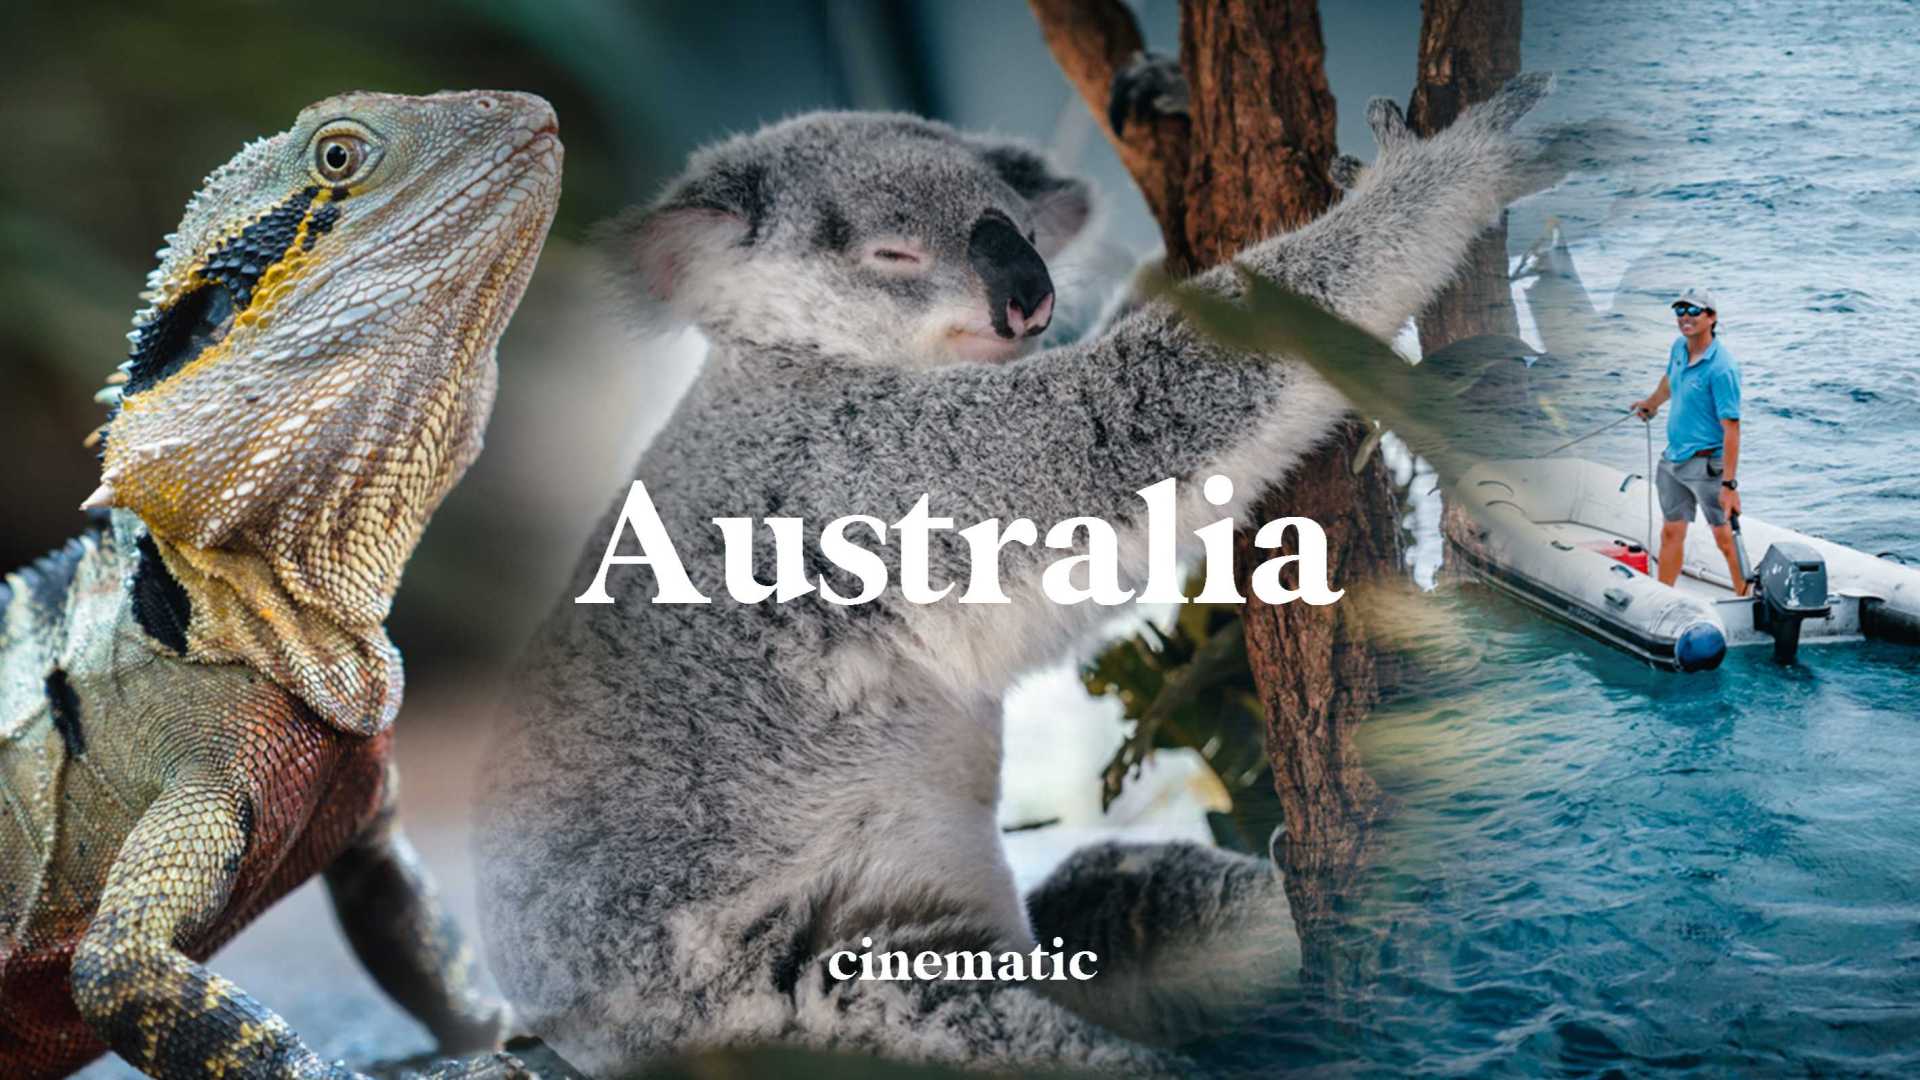 【澳洲旅拍】澳大利亚东海岸的情绪色彩